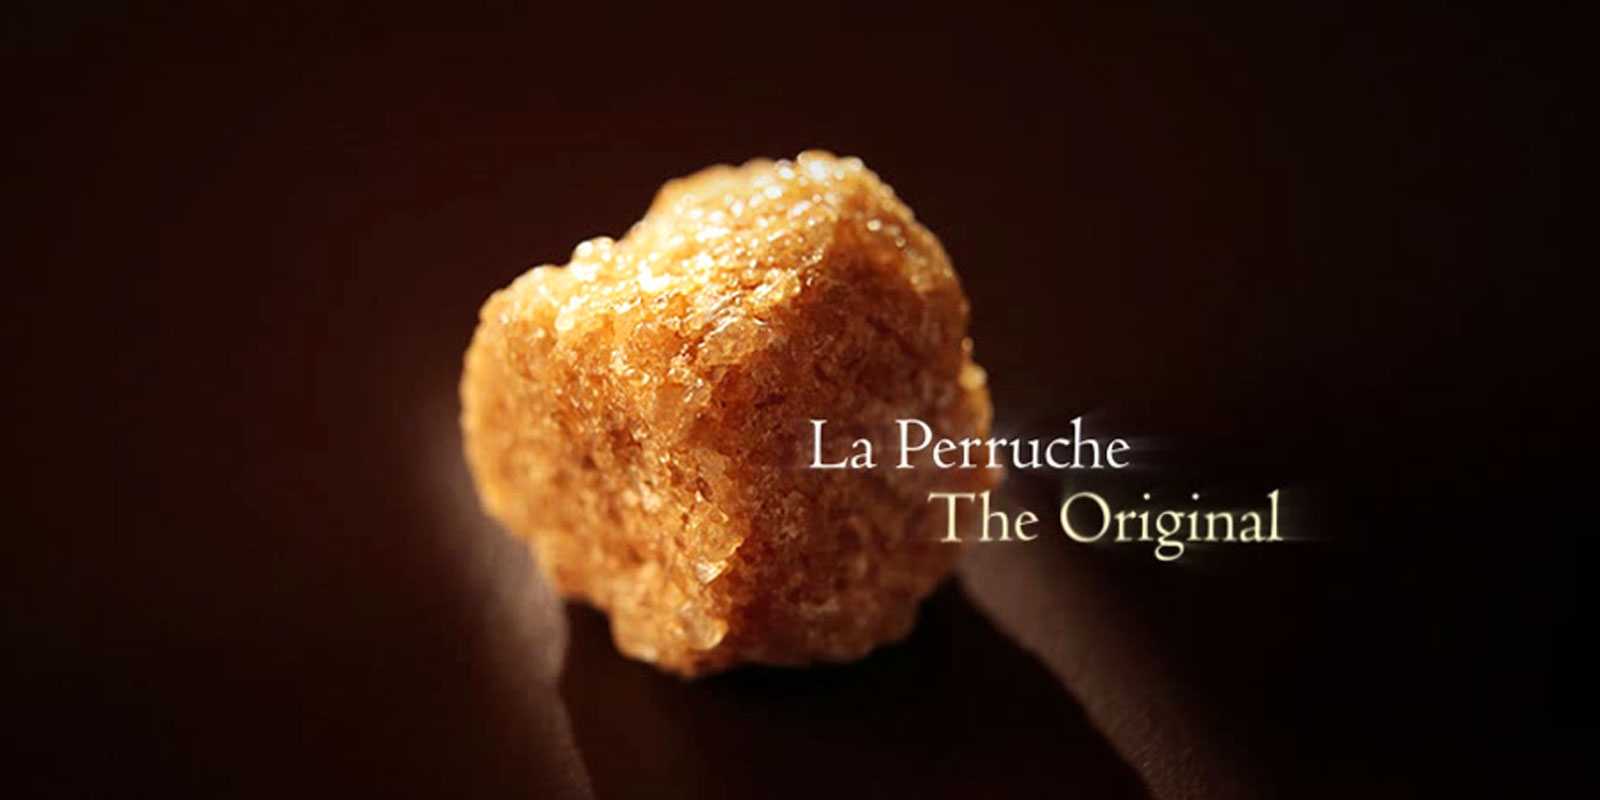 La Perruche - sheqer kallami La Perruche eshte nje produkt i jashtezakonshem, me nje shije te vecante qe do te kenaqe te gjithe ata qe vleresojne shijen e holle dhe te sofistikuar. Shume thjesht, ajo sjell kenaqesi te plote ne shqisat tuaja. La Perruche vjen ne gunga te parregullta sheqeri ne kafe te bardhe ose te arte. Forma kristali ne shaker e njohur edhe si kasonade.